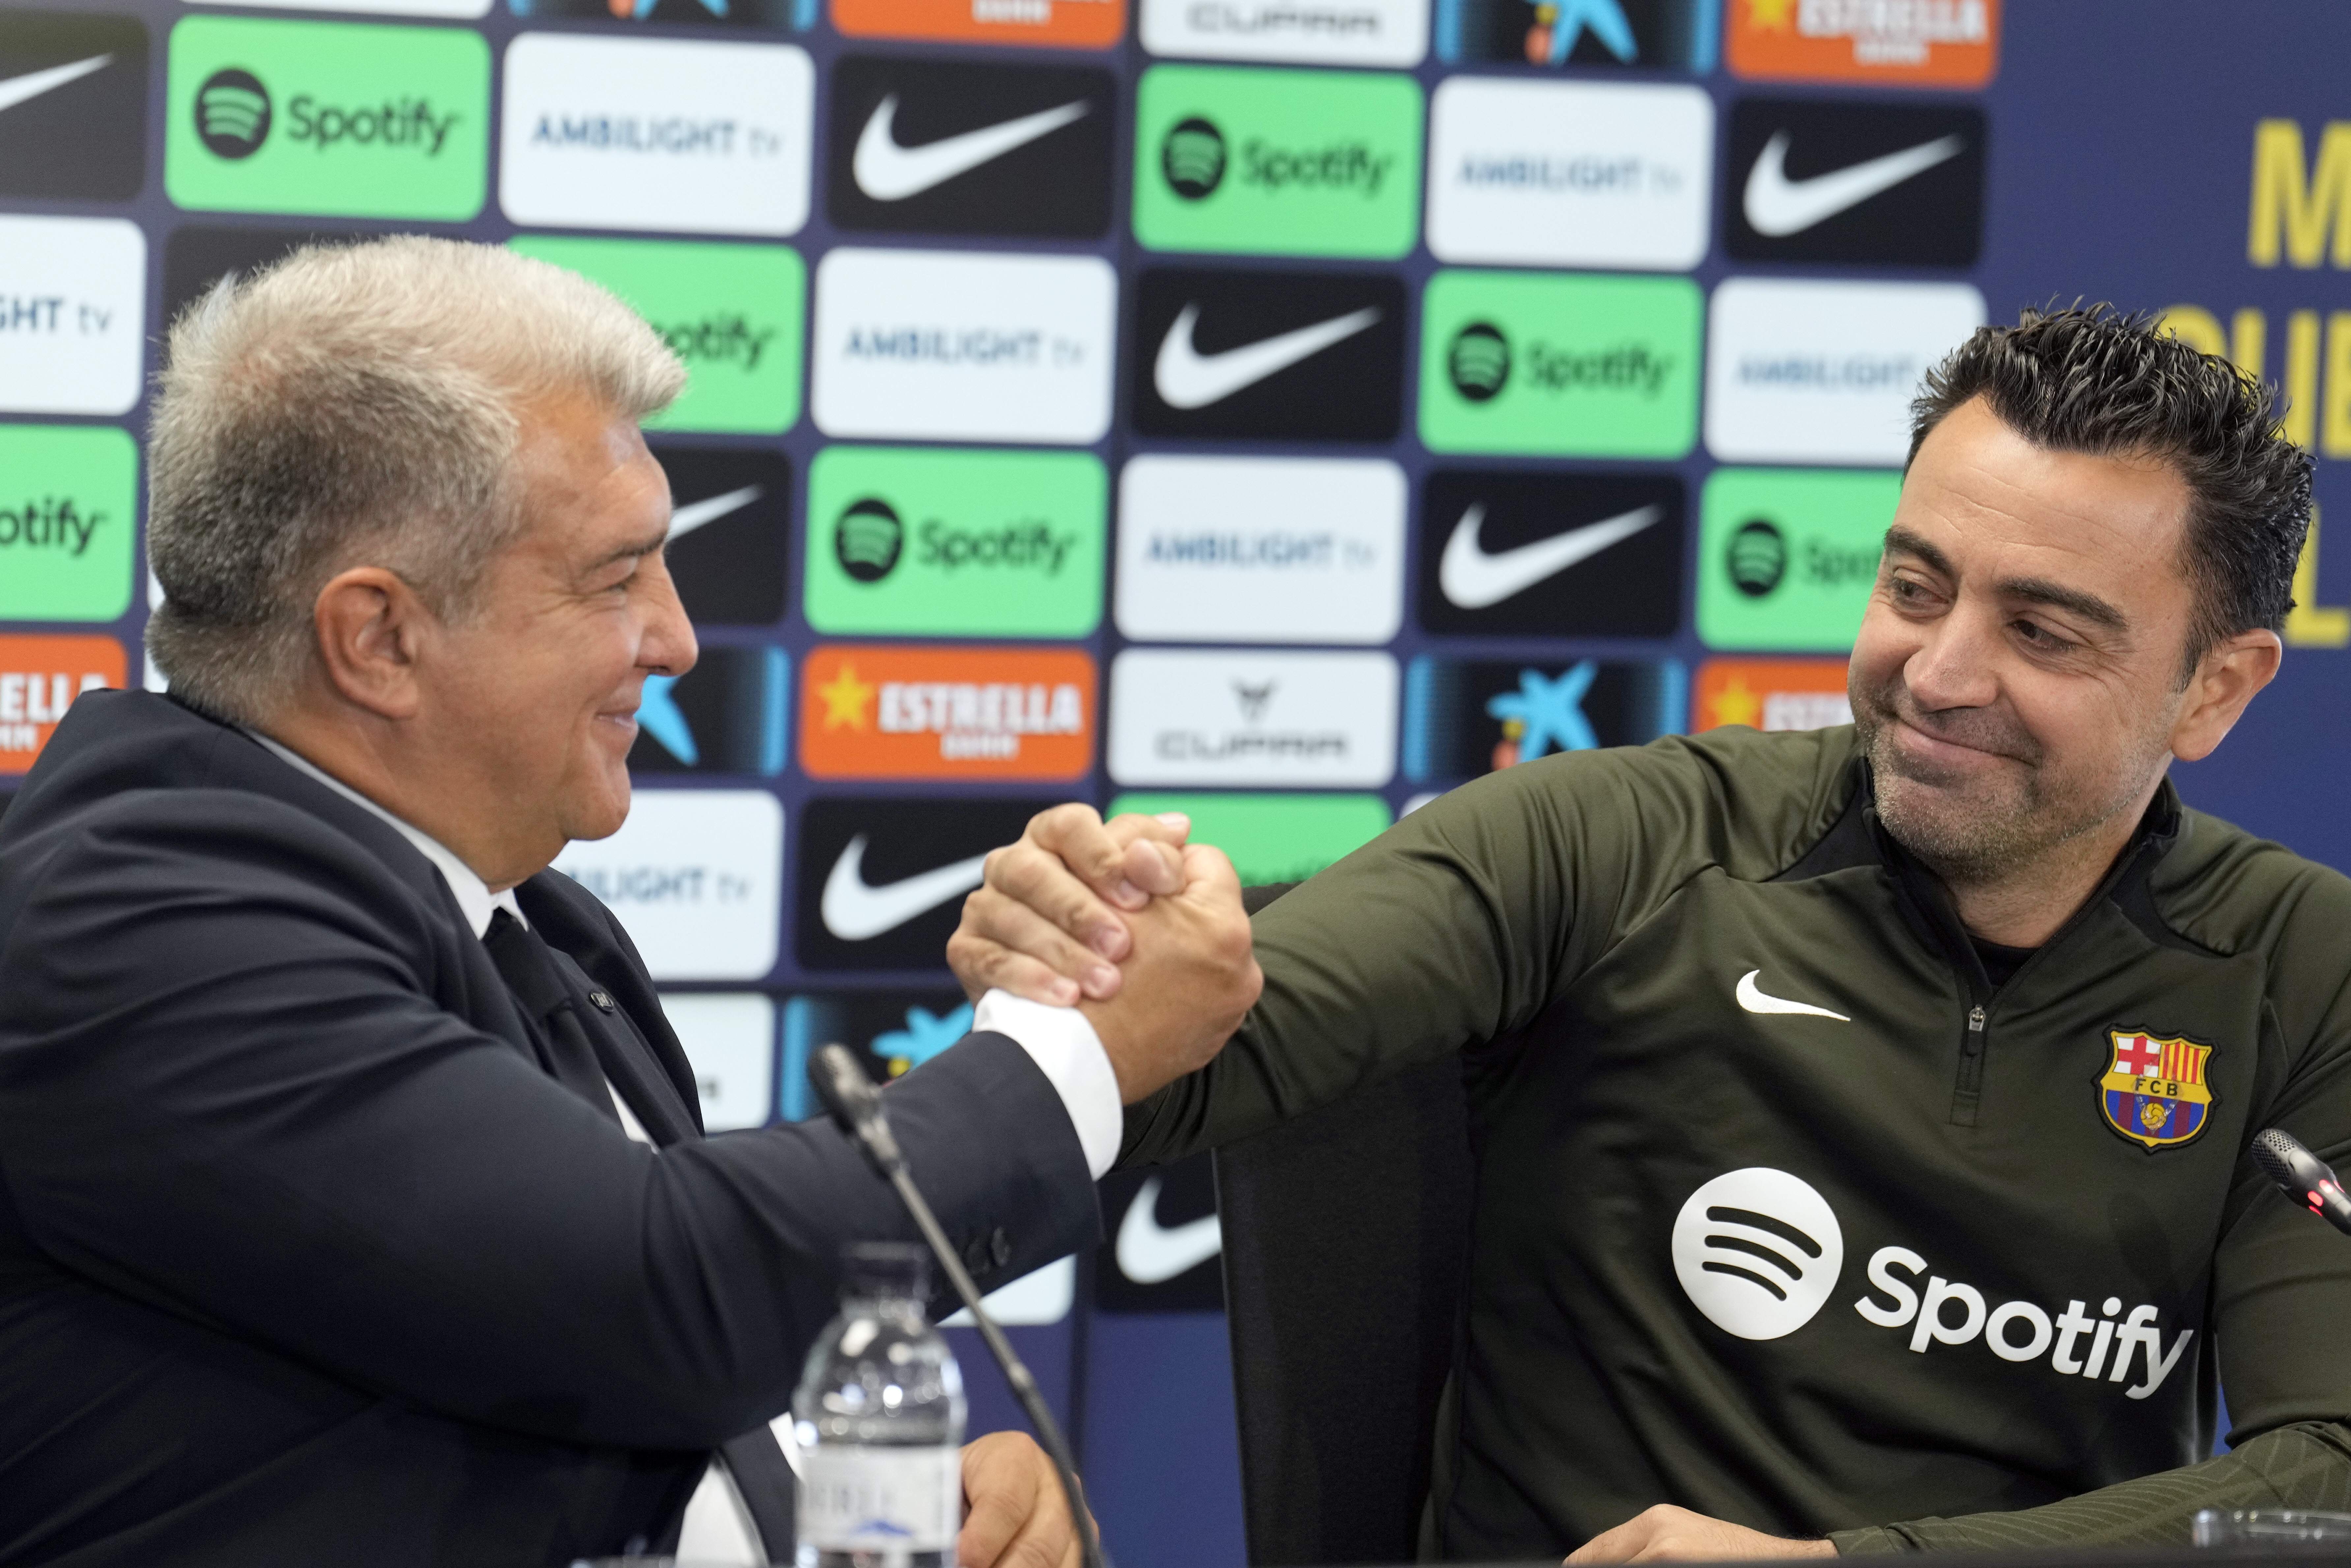 Joan Laporta i Xavi Hernández confirmen la continuïtat: "El Barça necessita estabilitat"